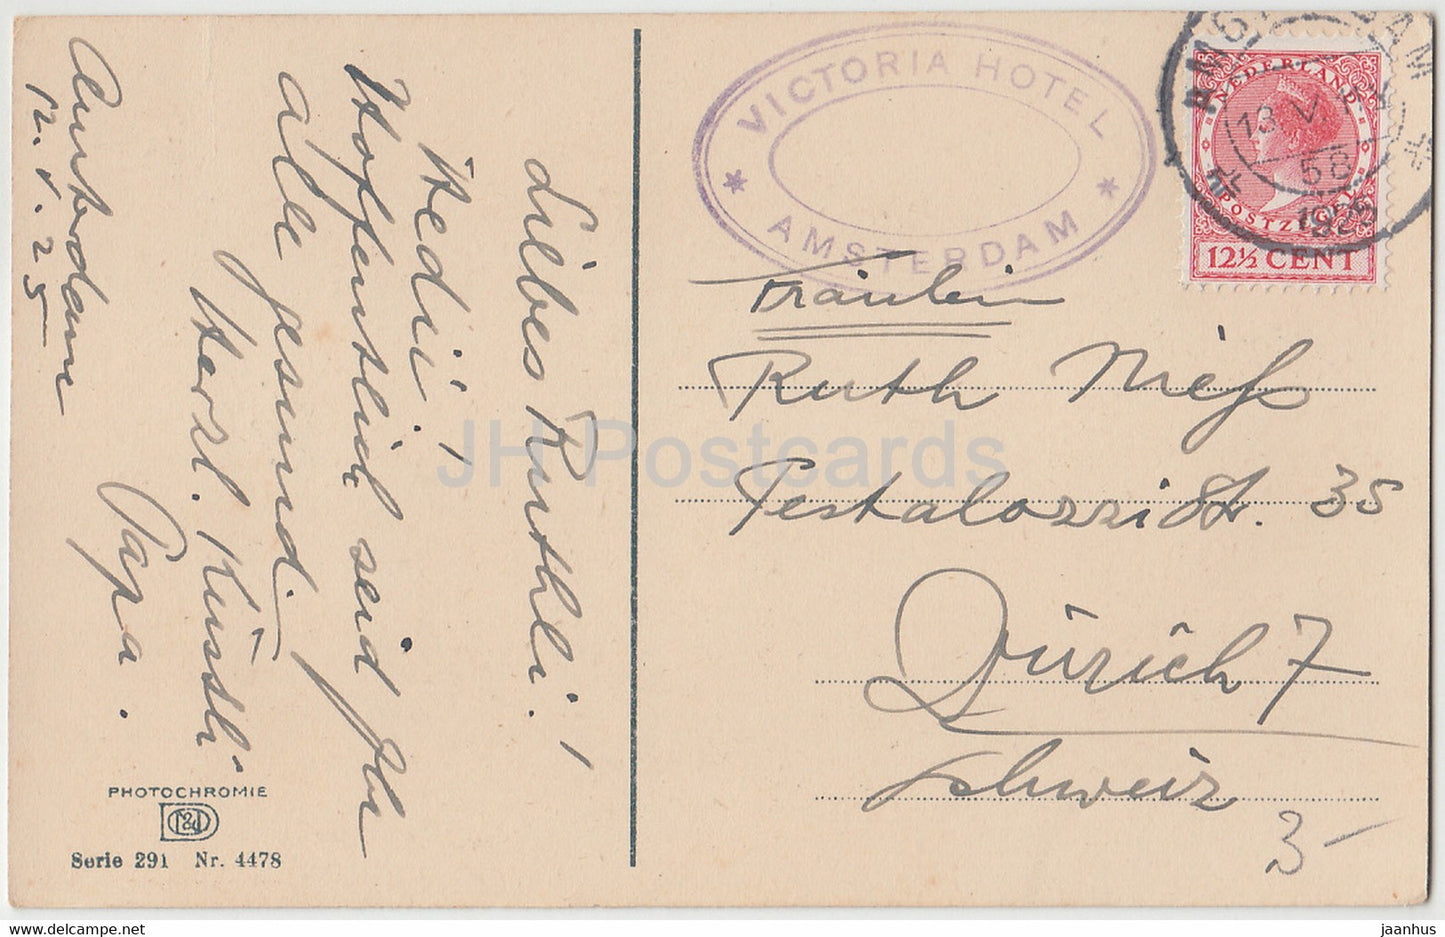 Volendam – Kinder – Segelboot – Victoria Hotel – Photochromie – 4478 – alte Postkarte – 1925 – Niederlande – gebraucht